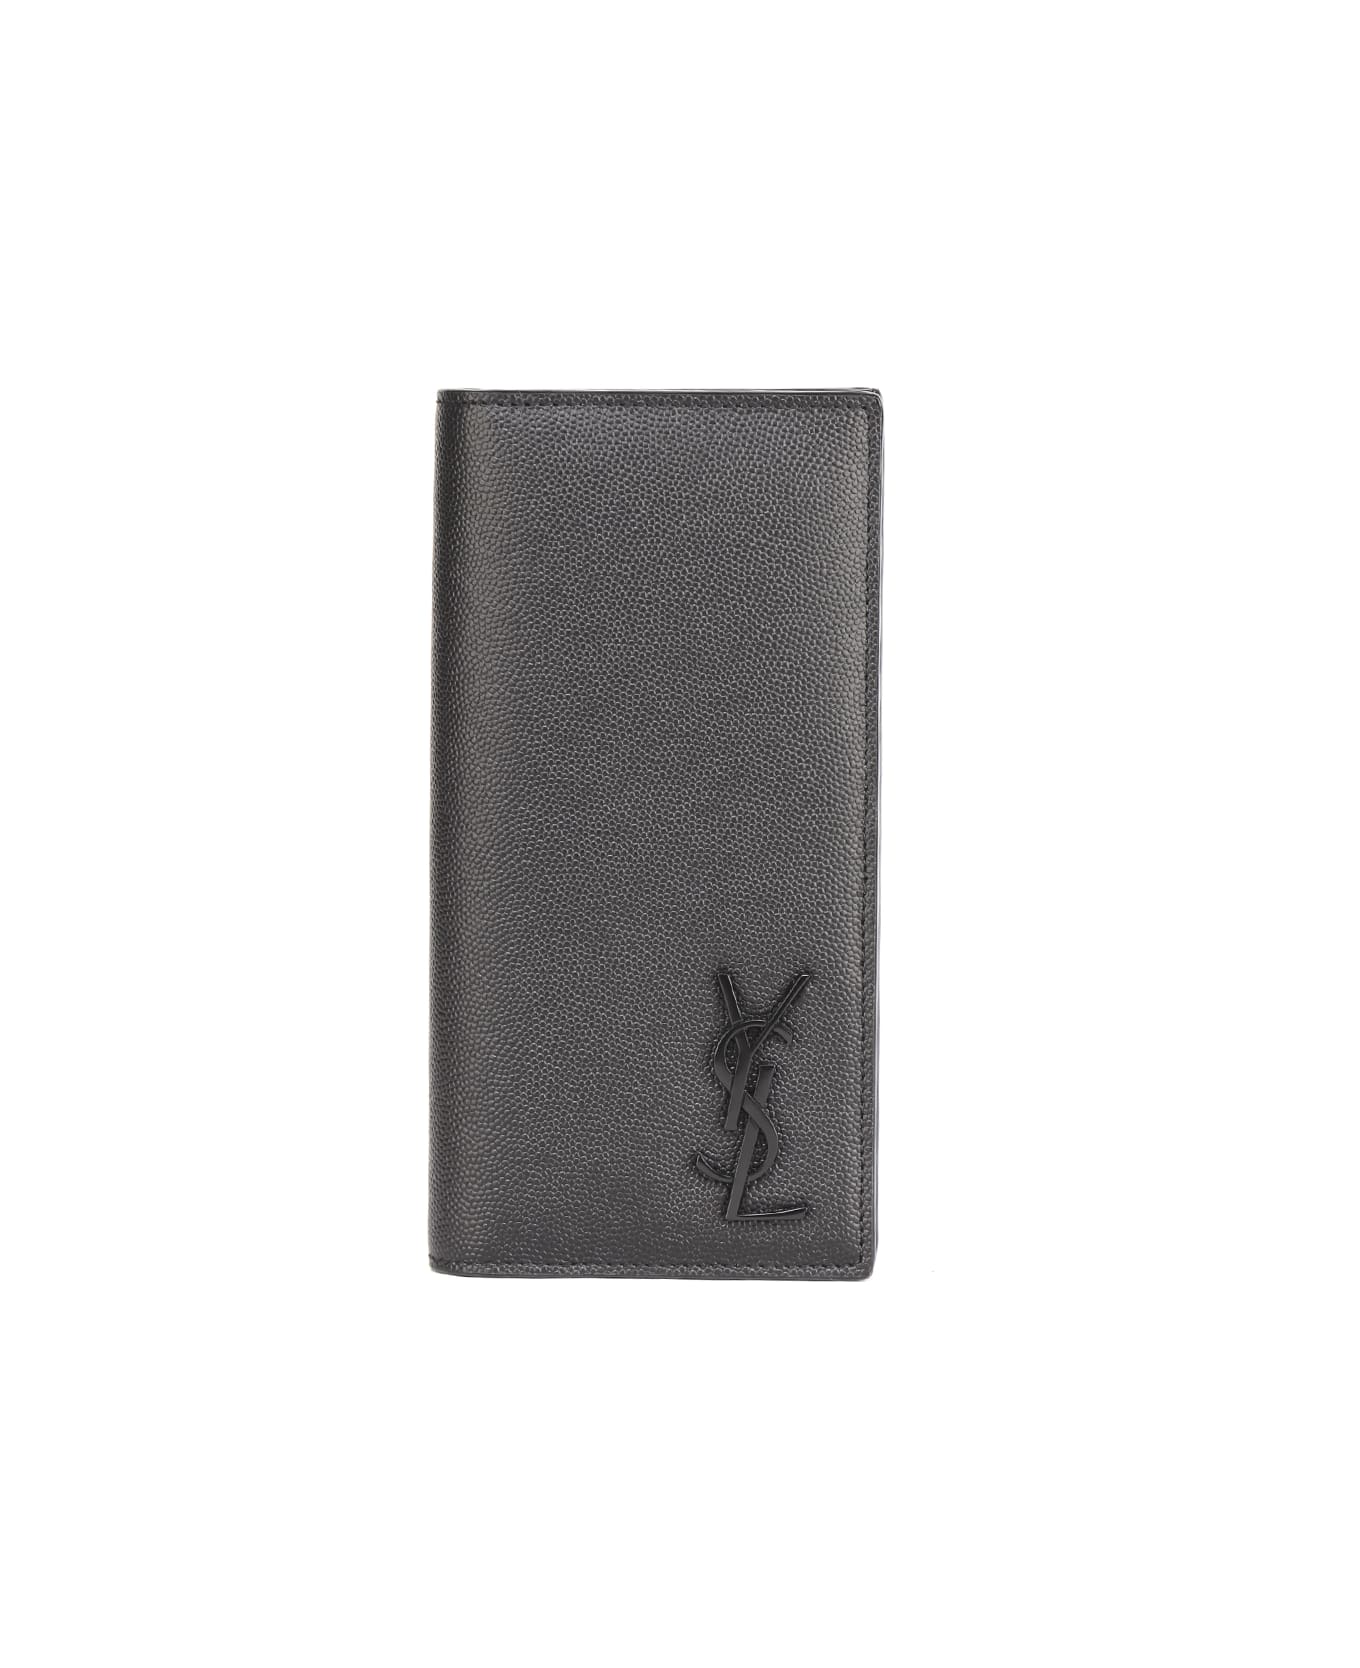 Saint Laurent Monogram Wallet In Grain De Poudre Leather - Black 財布